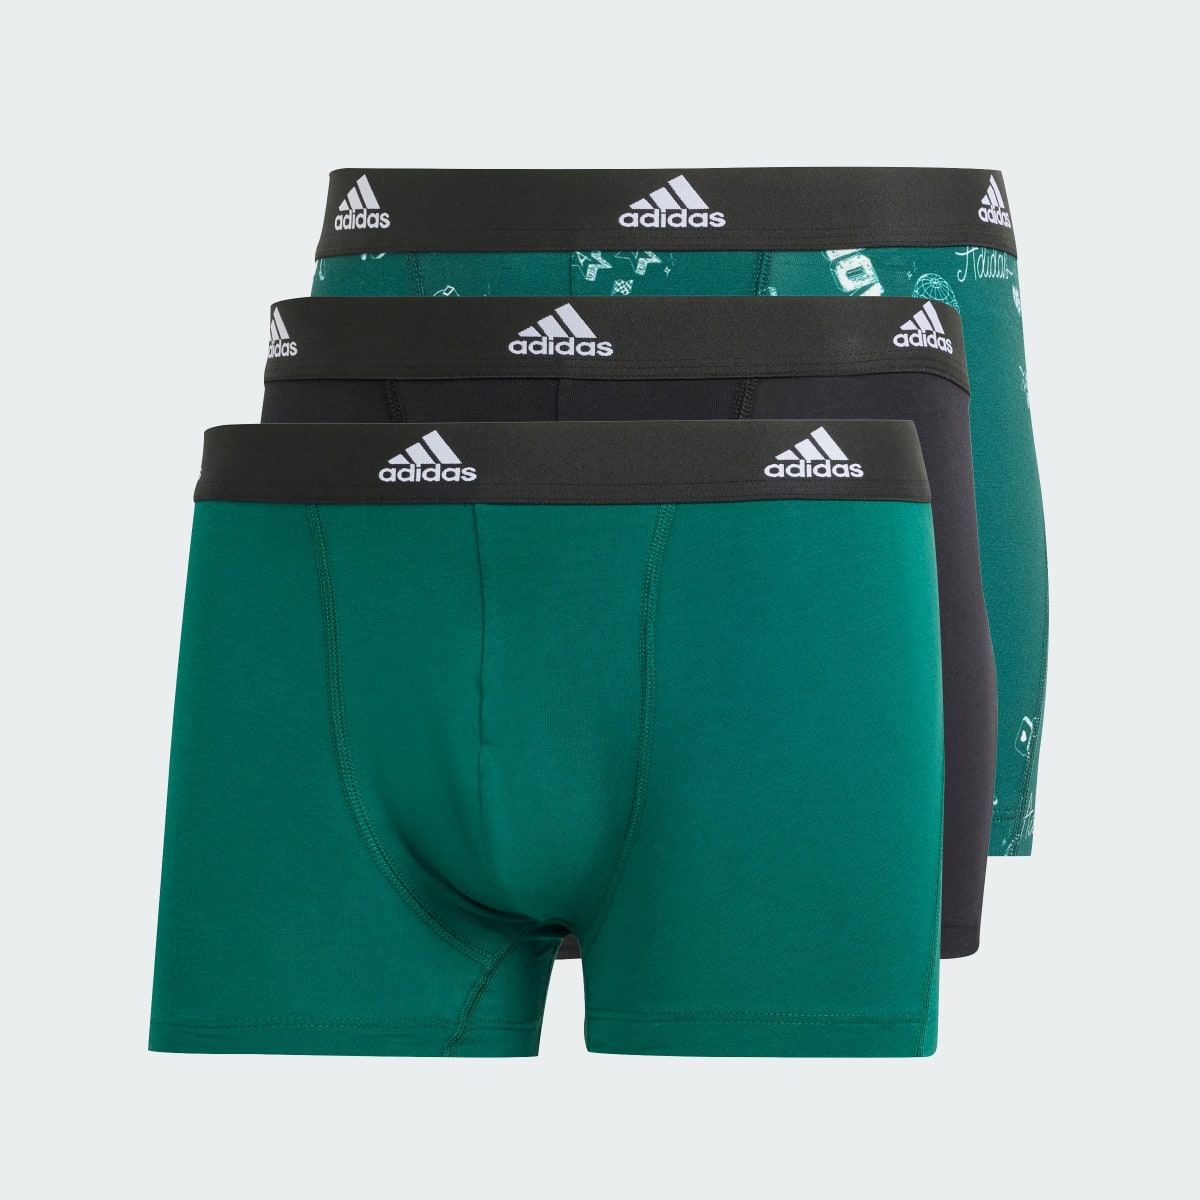 Adidas Active Flex Cotton Trunk Underwear 3 Pack. 6